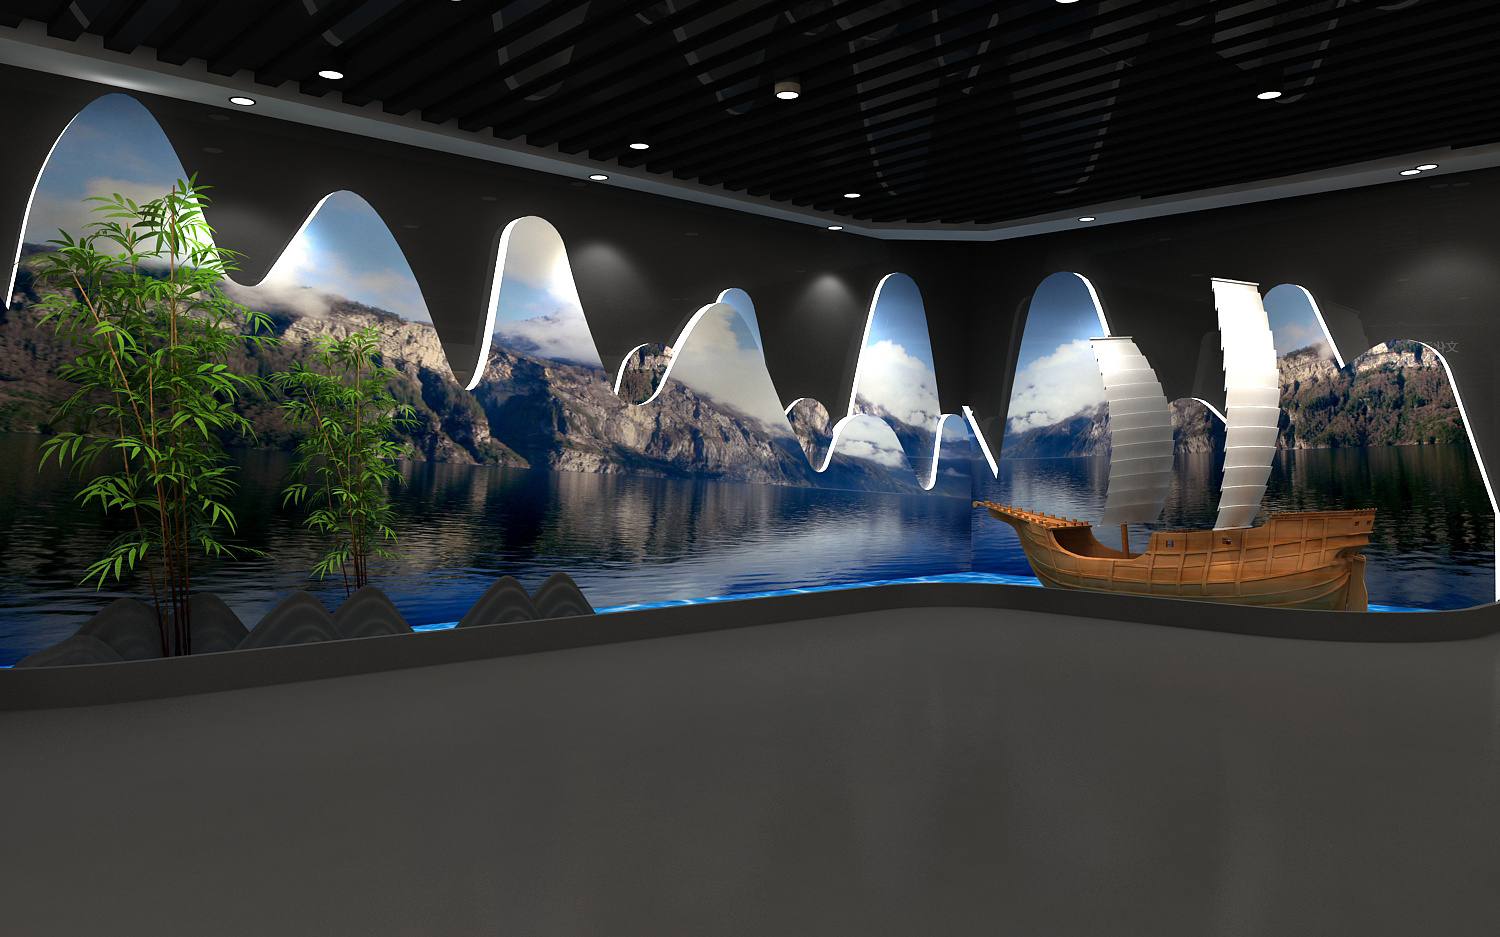 非遗展厅博物馆设计3d效果图,定制各类3d效果图设计